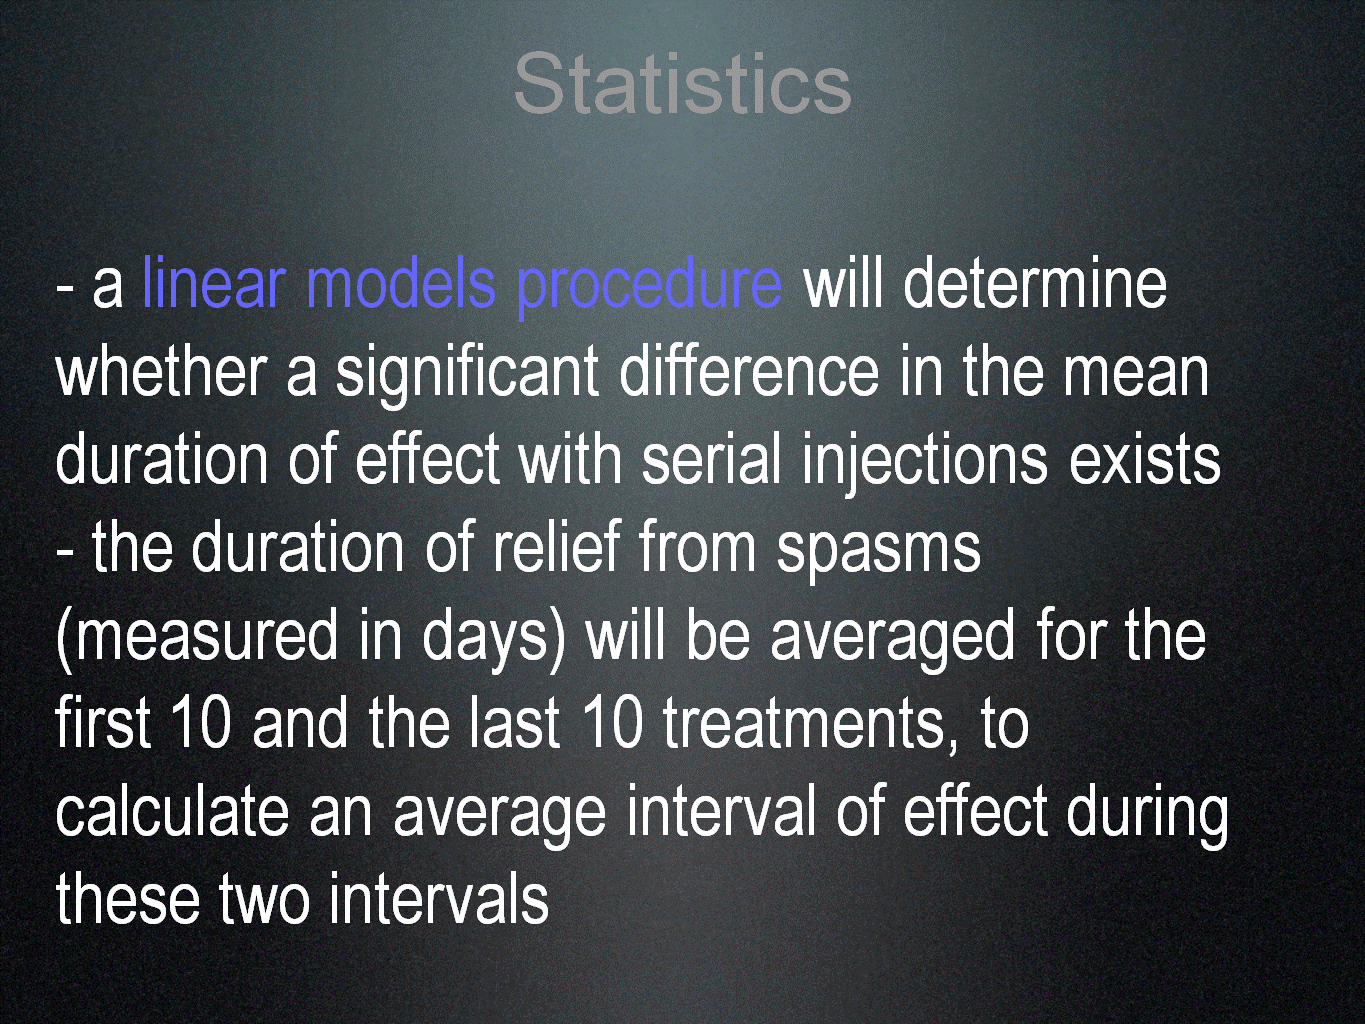 PowerPoint slide 15, described in text.